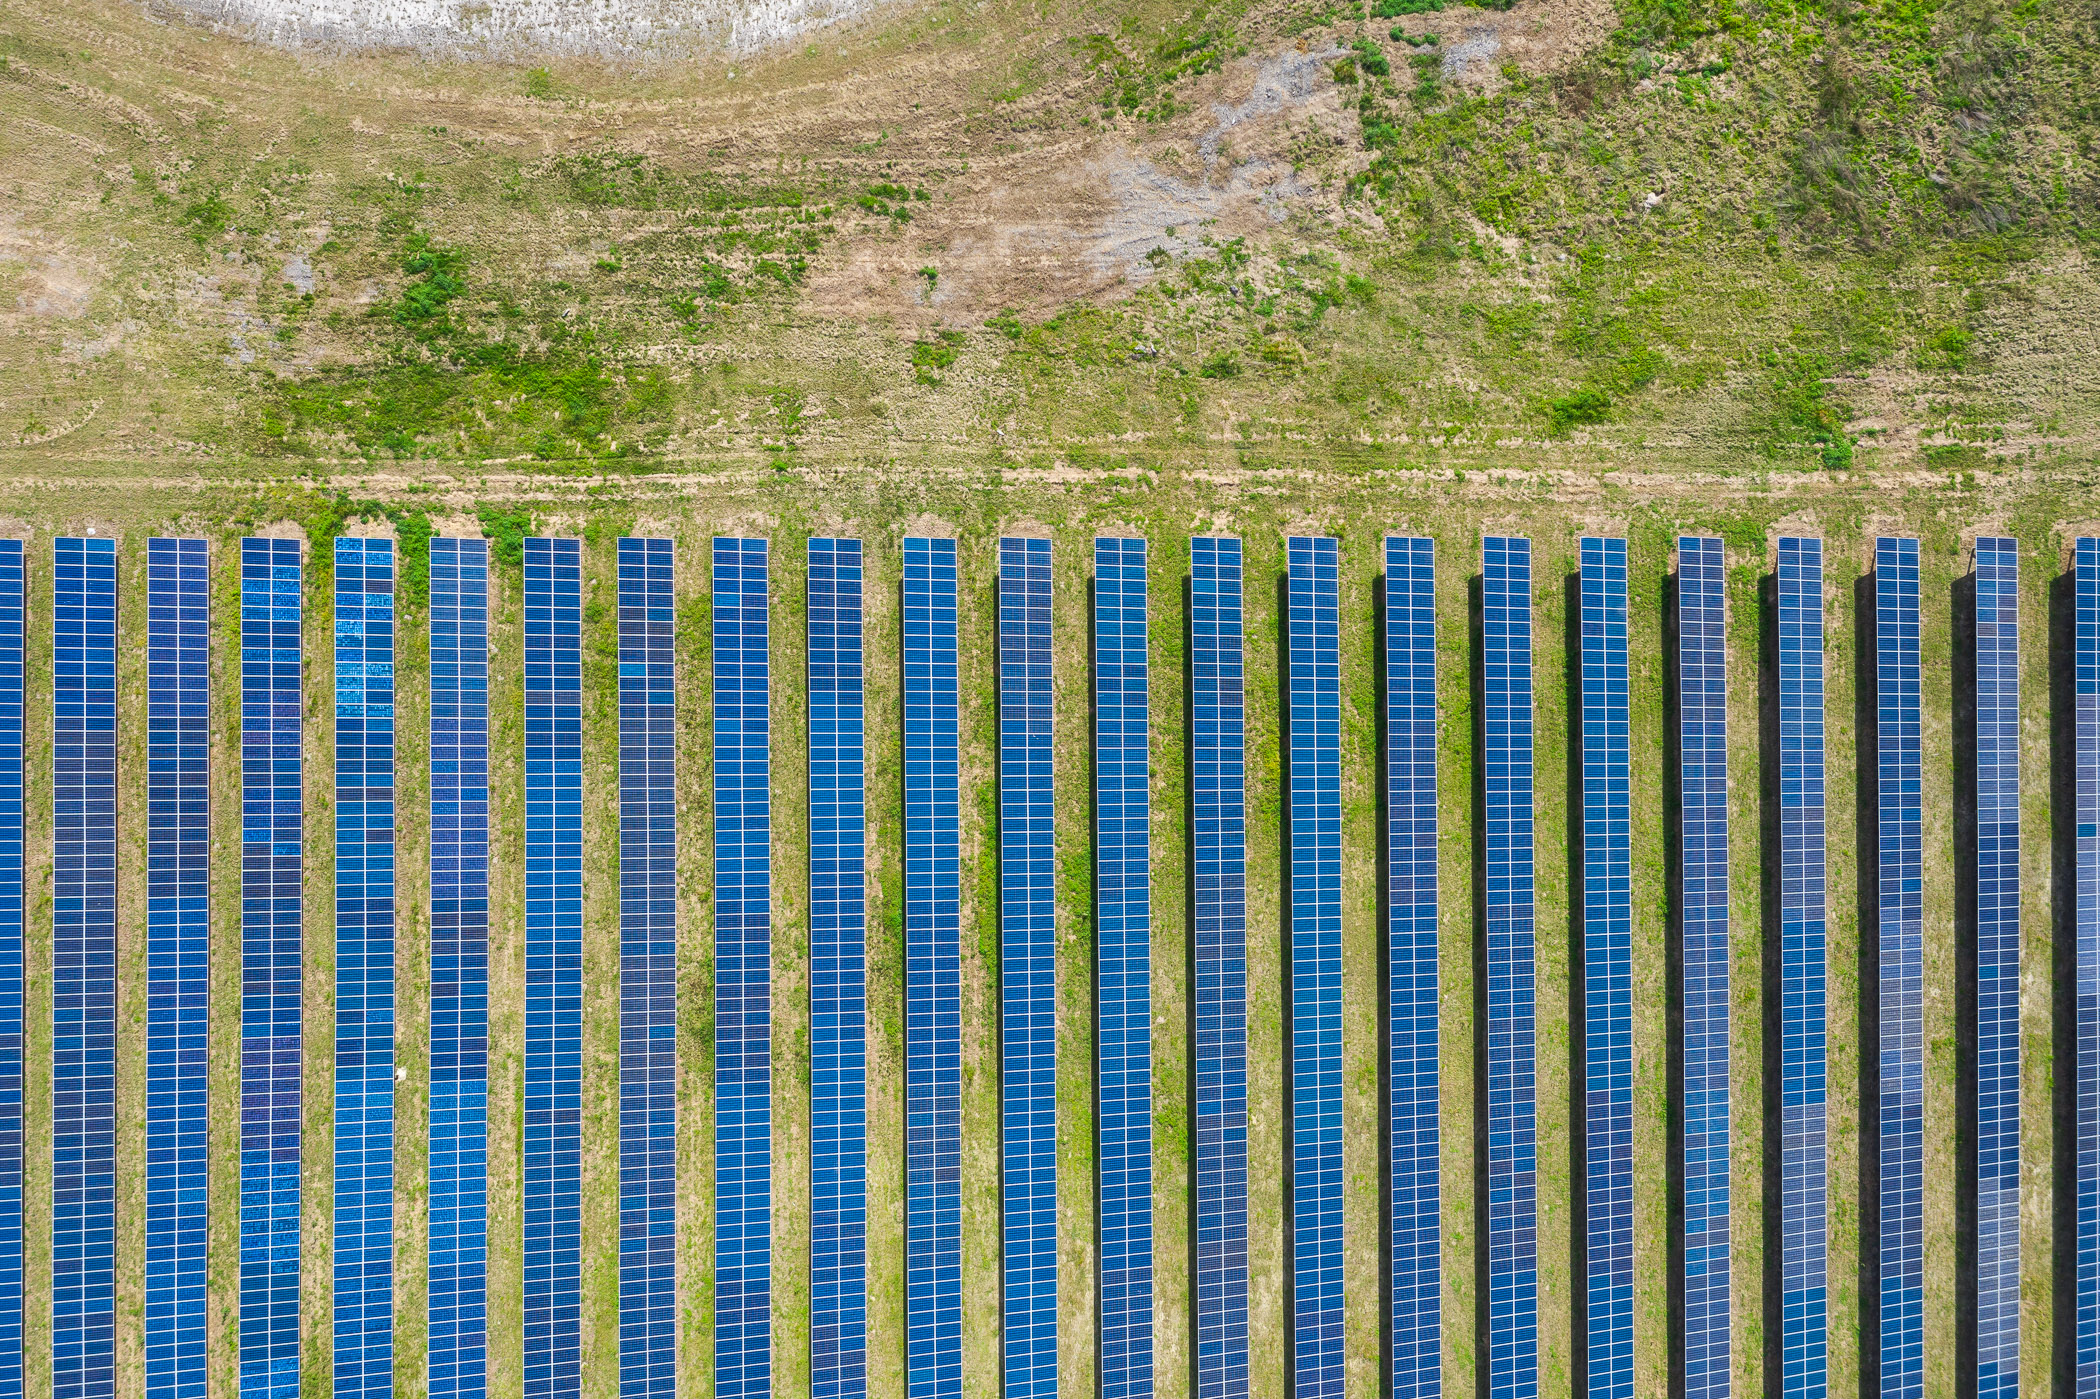 Drone Photographer from Atlanta Shoots Solar Farm